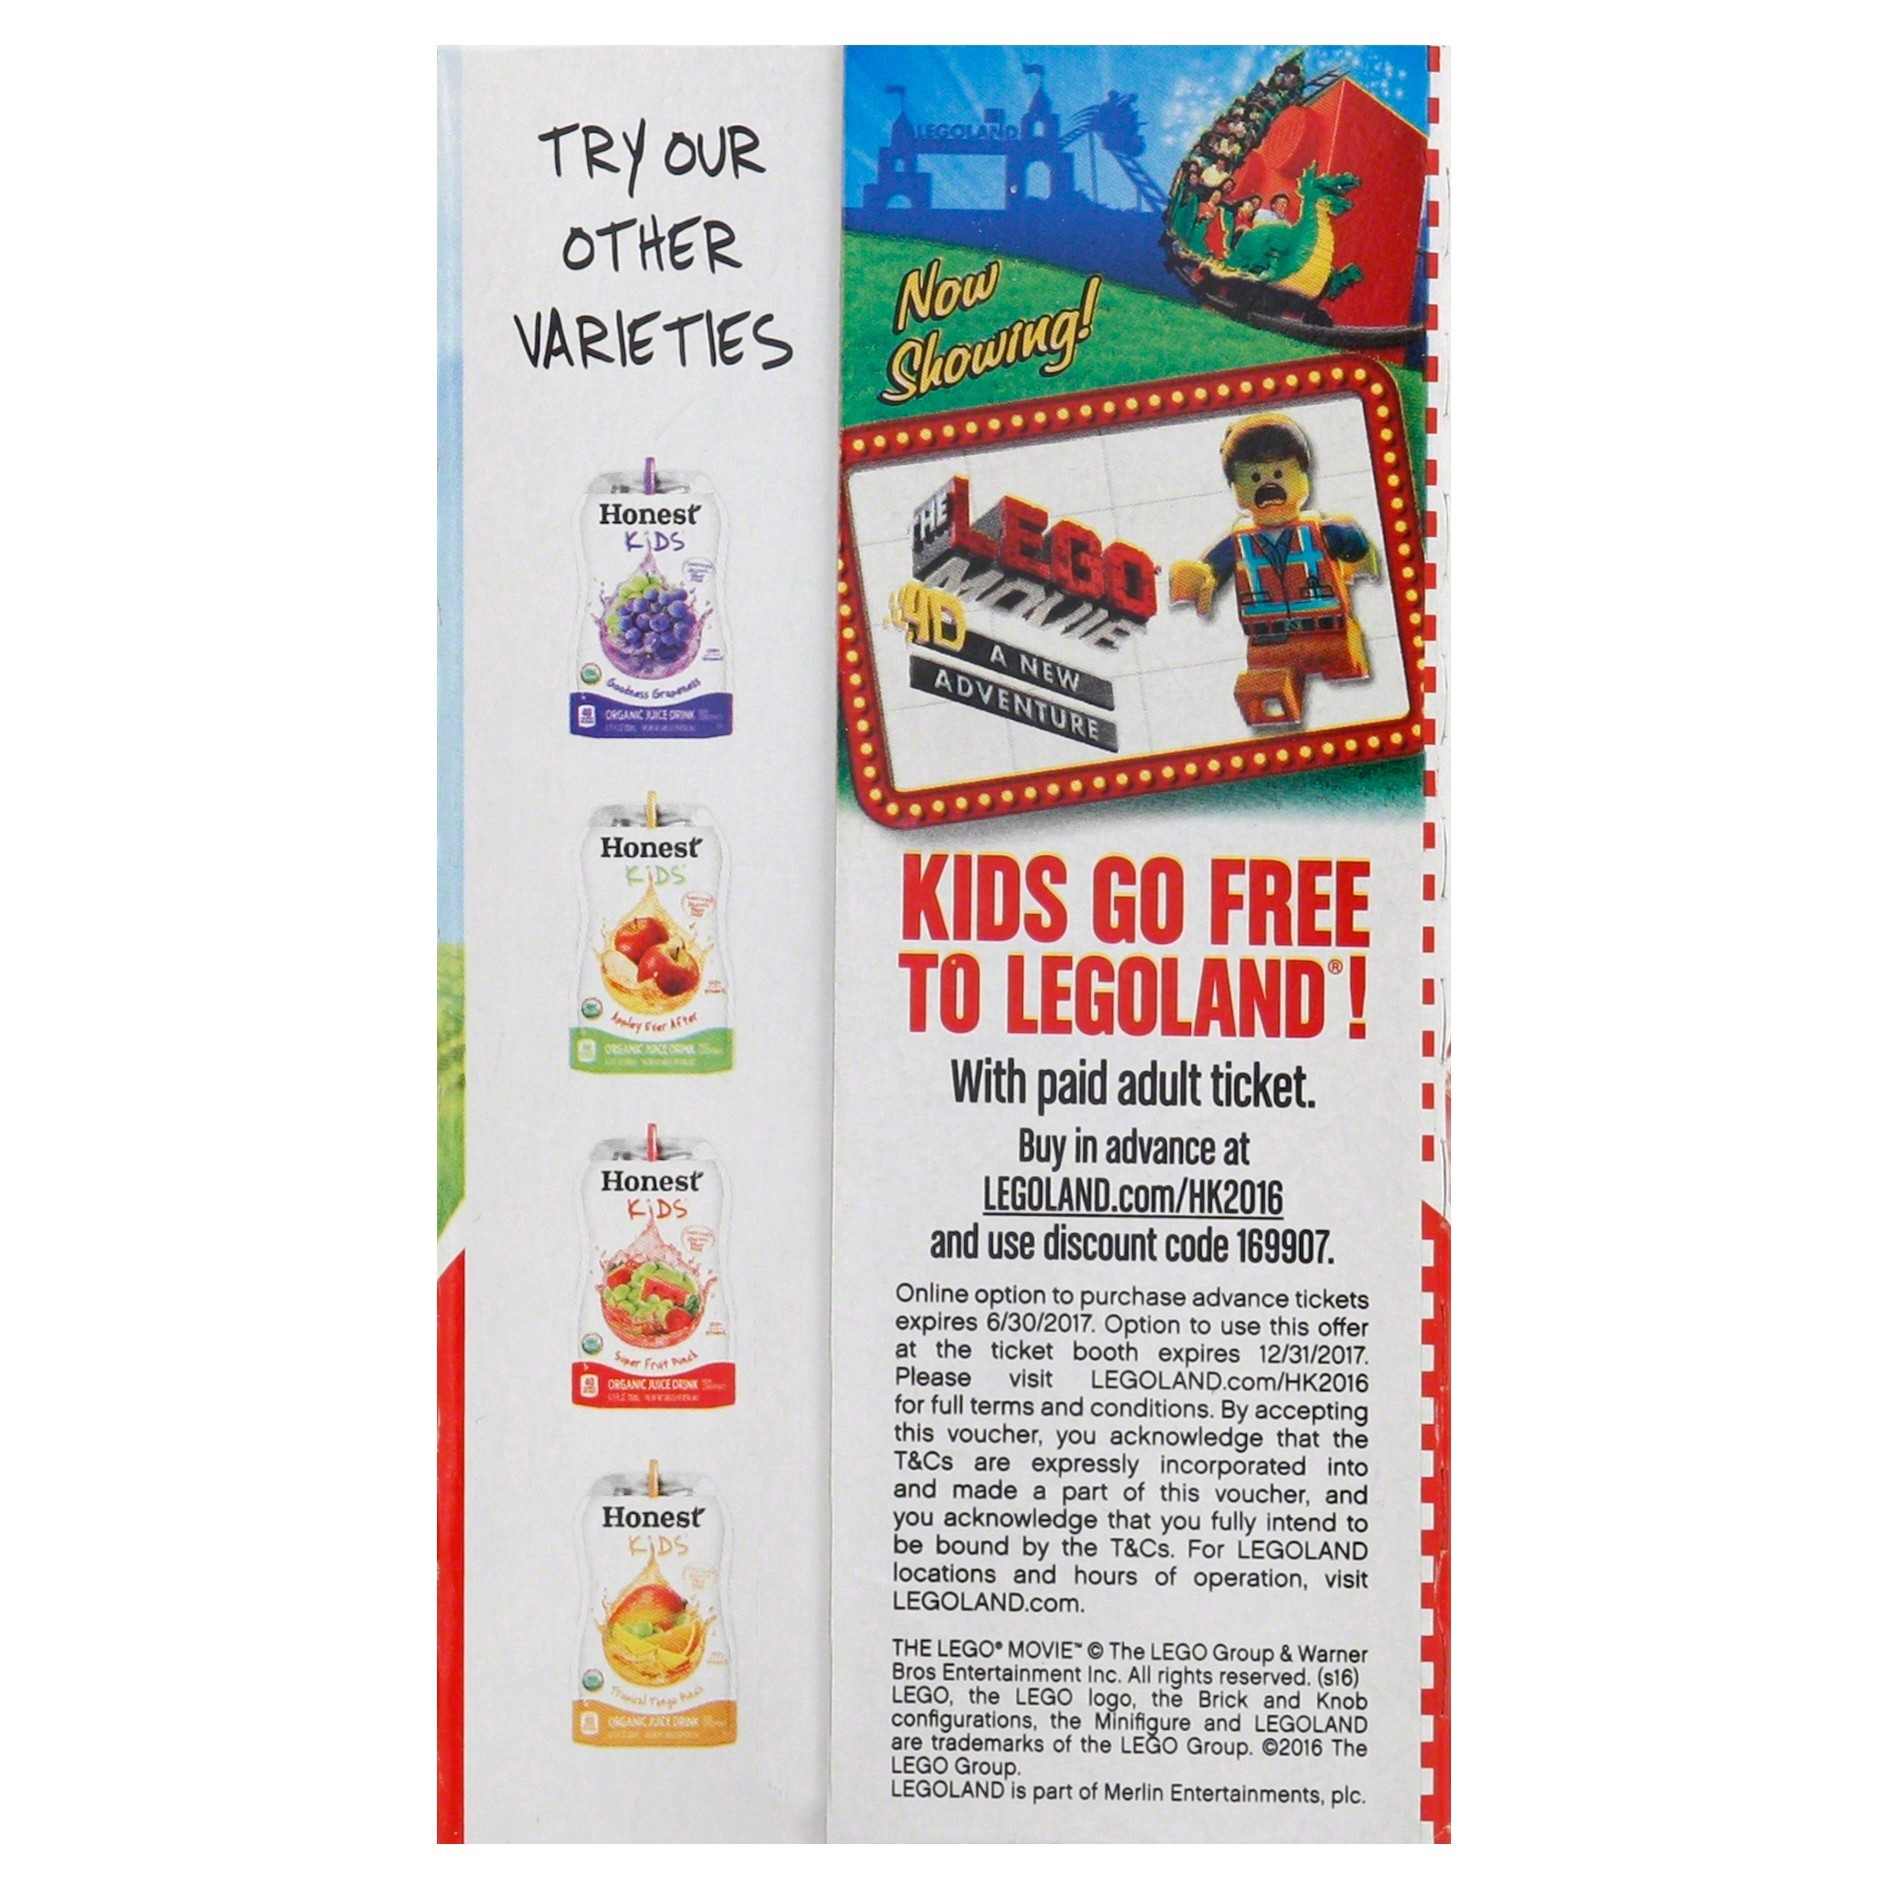 slide 9 of 9, Honest Kids Super Fruit Punch Organic Fruit Juice, 6.75 fl oz, 8 Pack, 54 fl oz